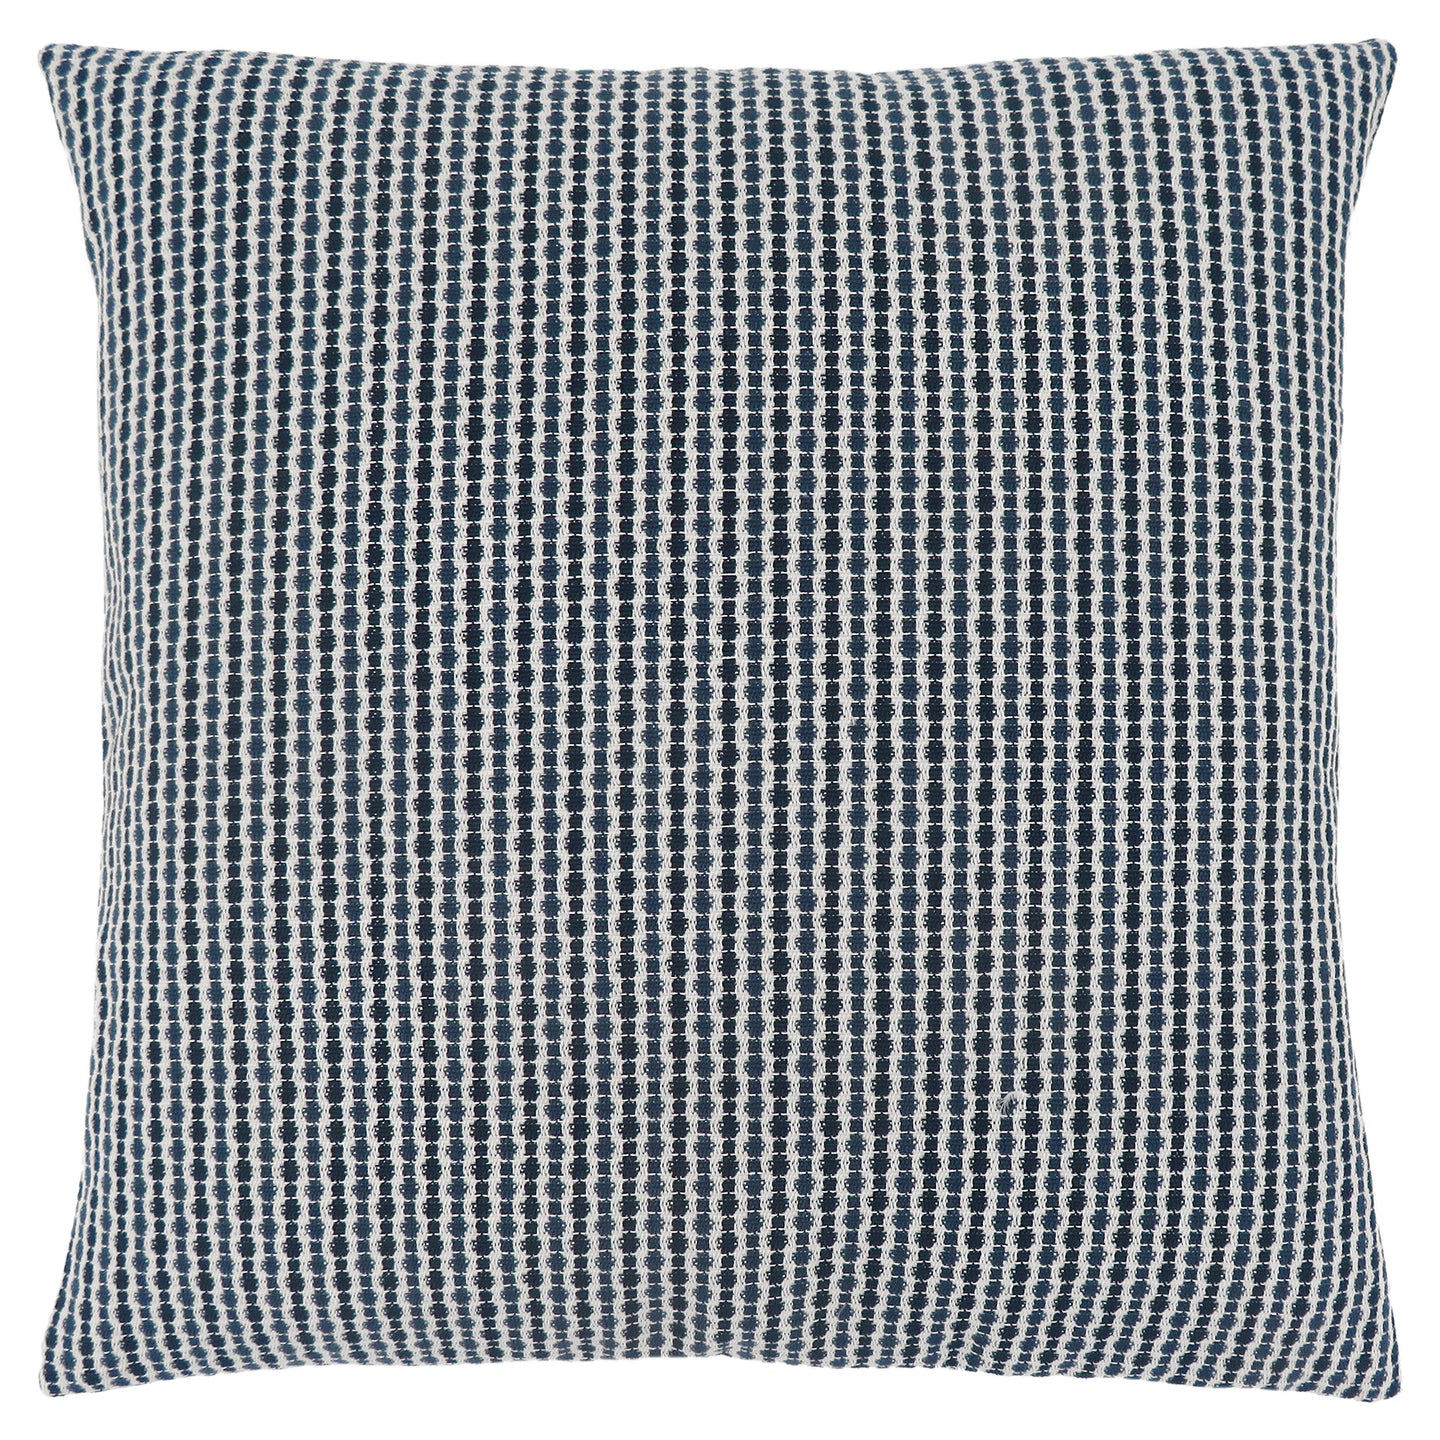 I 9240 Pillow - 18"X 18" / Light / Dark Blue Abstract Dot / 1pc - Furniture Depot (7881169109240)